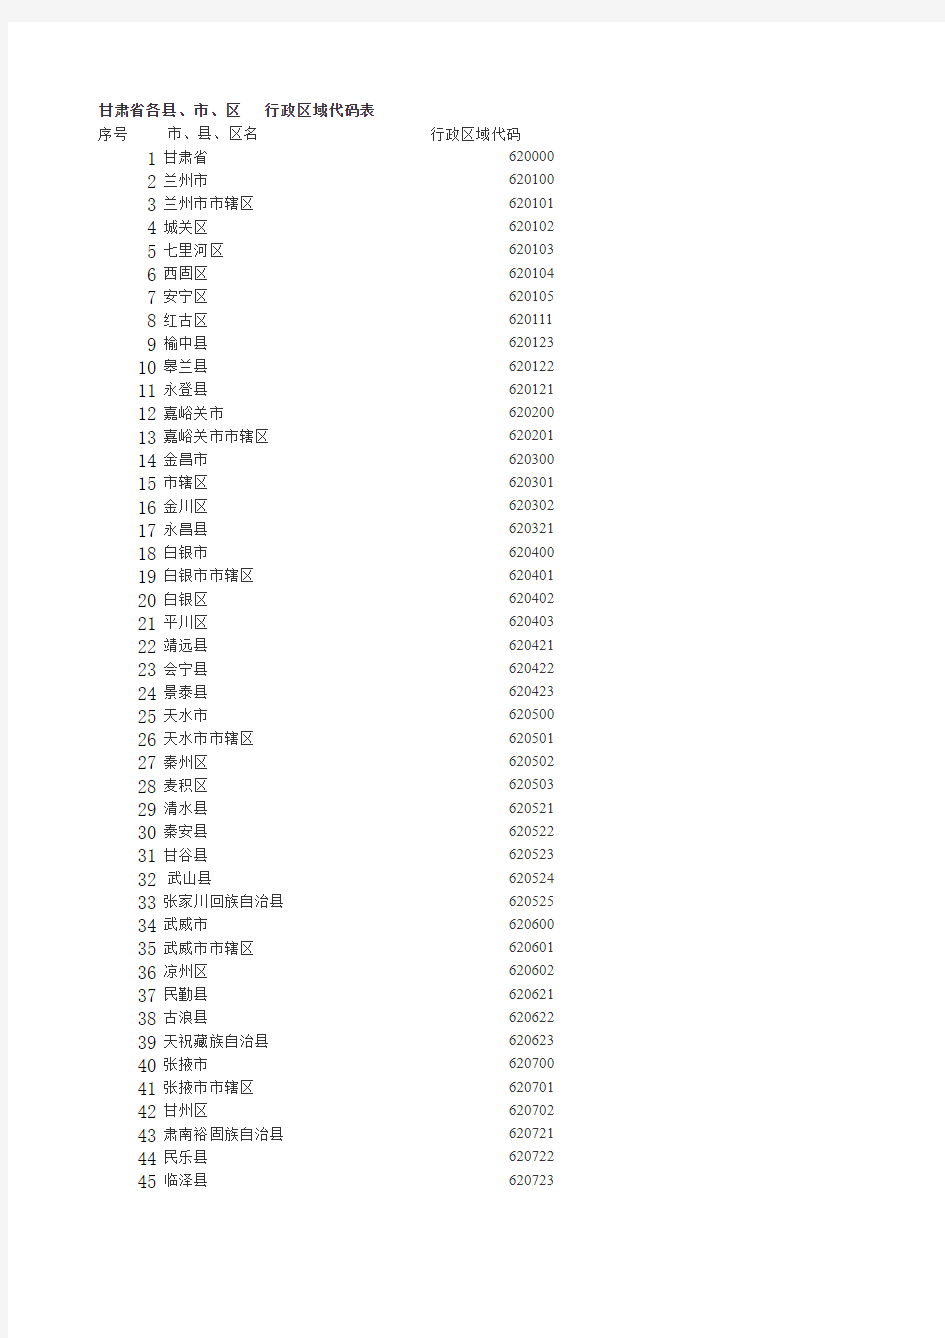 甘肃省行政区域代码表